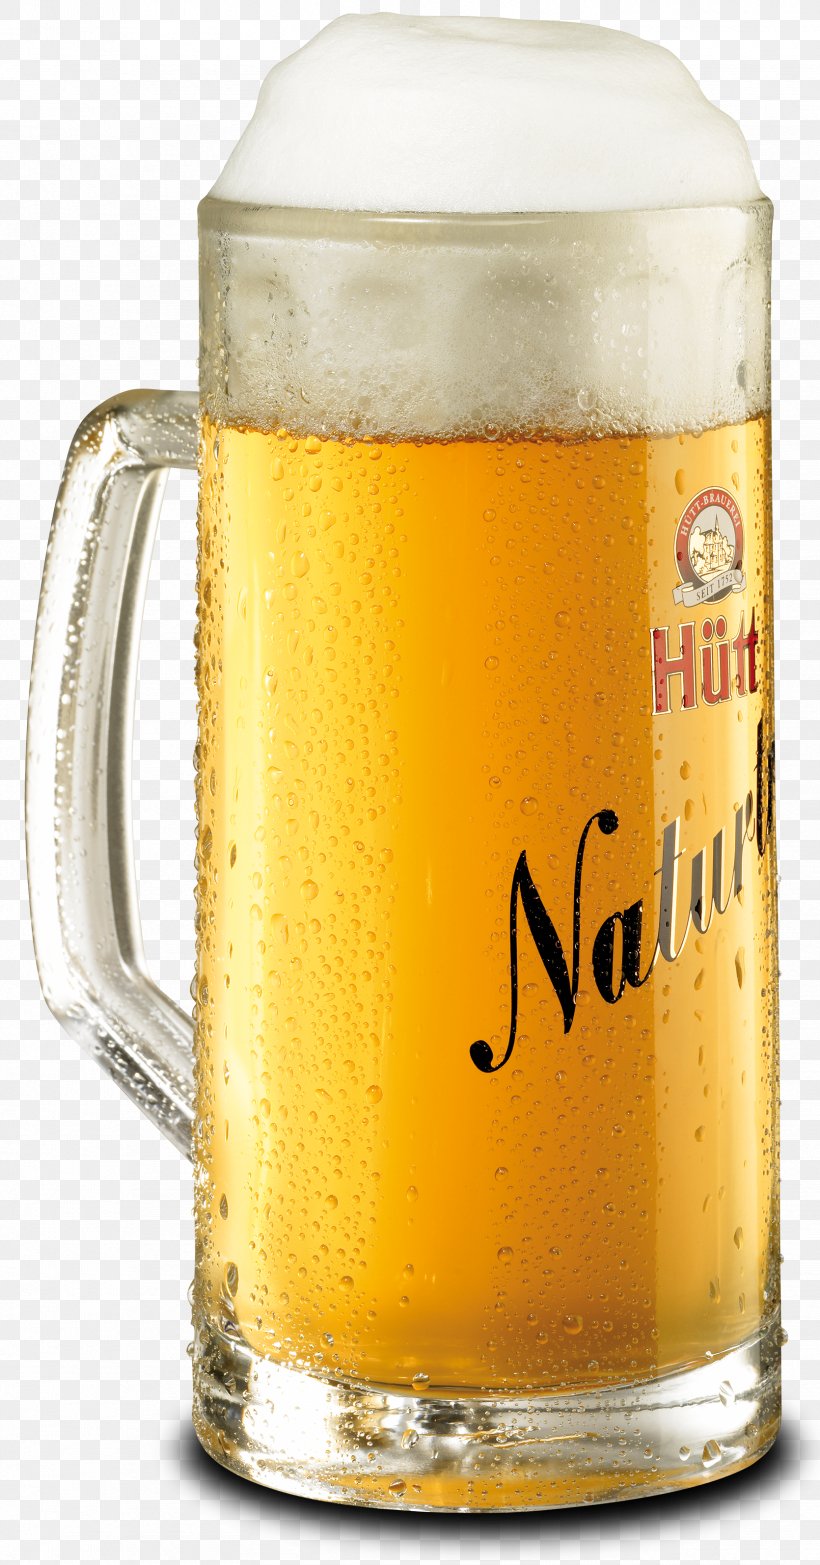 Beer Stein Beer Glasses Pint, PNG, 1670x3189px, Beer, Beer Glass, Beer Glasses, Beer Stein, Bottle Download Free